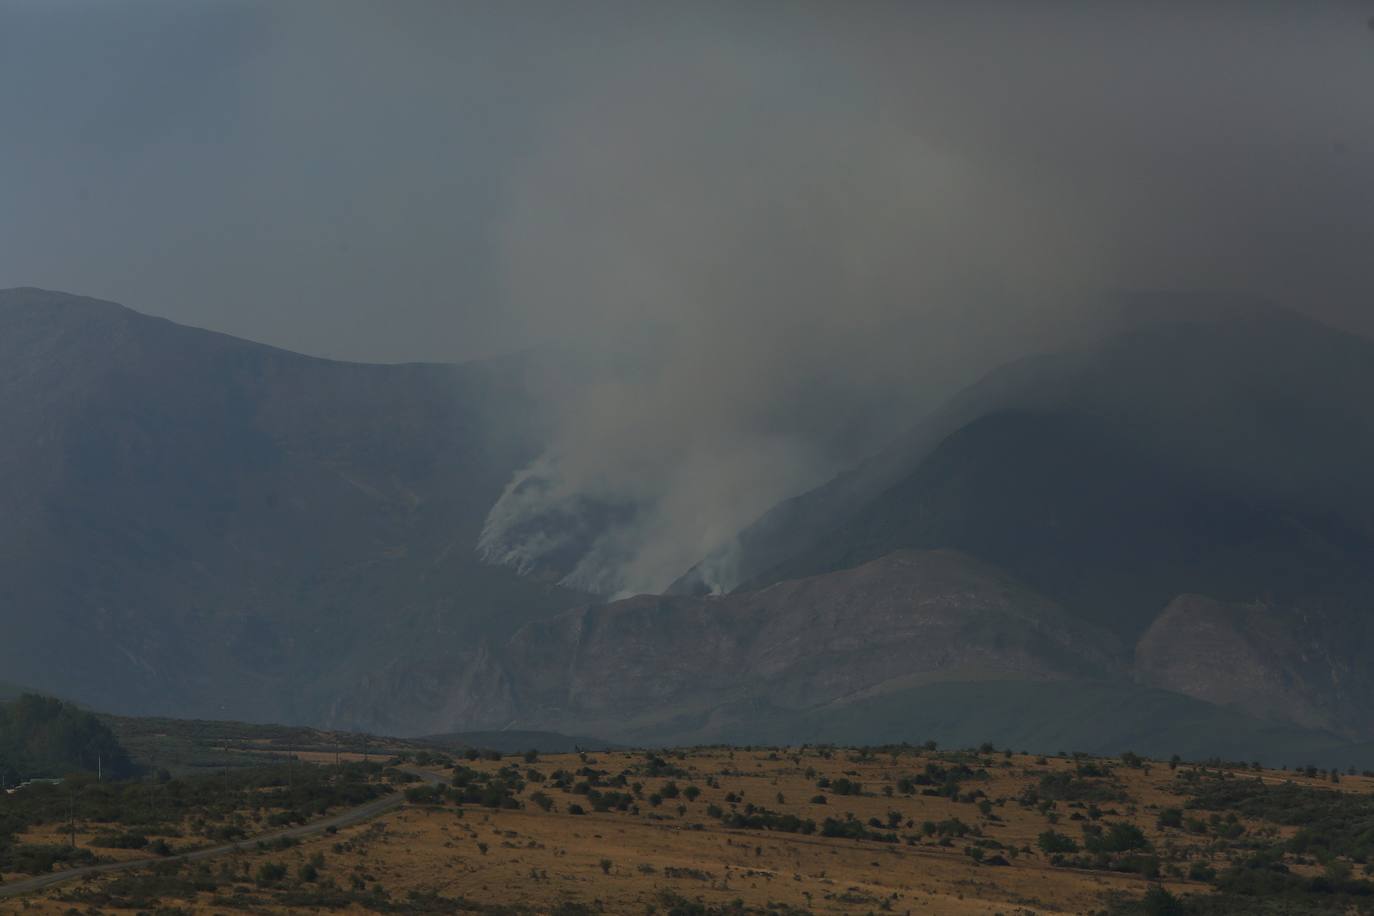 Incendio en Montes de Valdueza